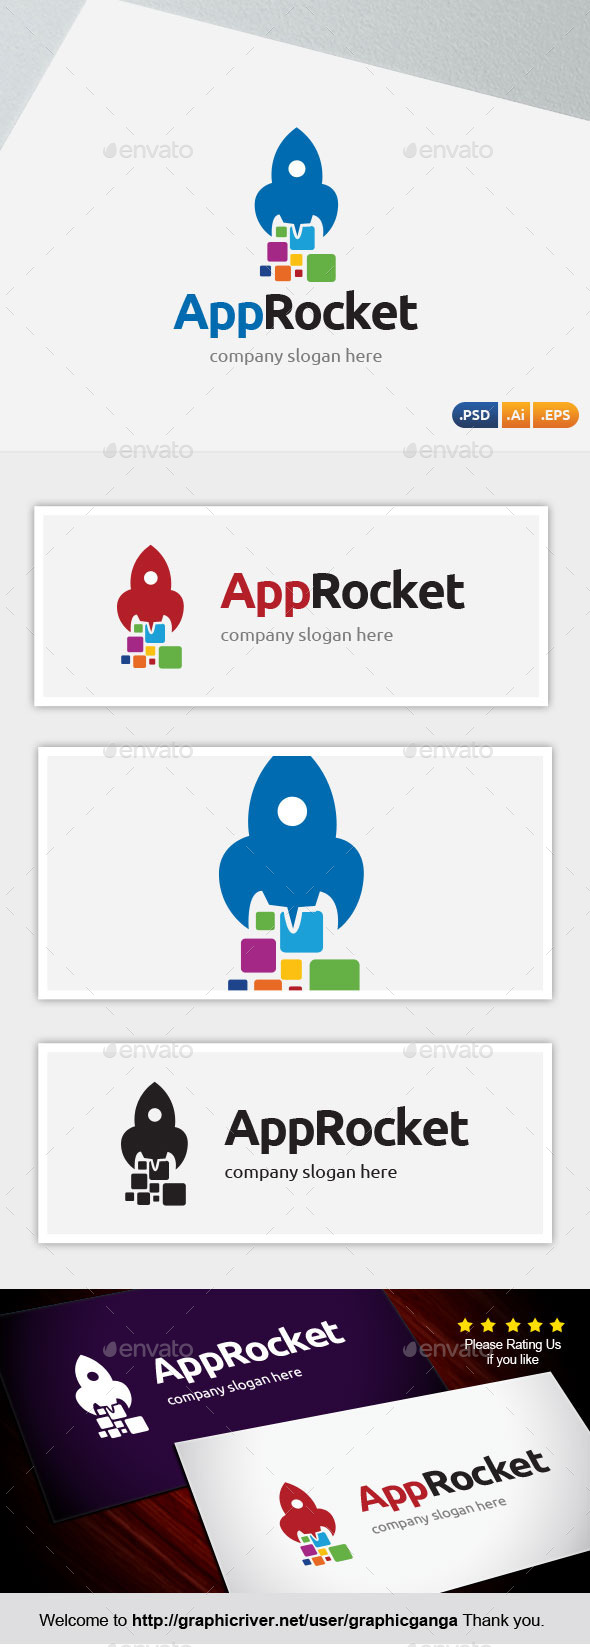 App Rocket